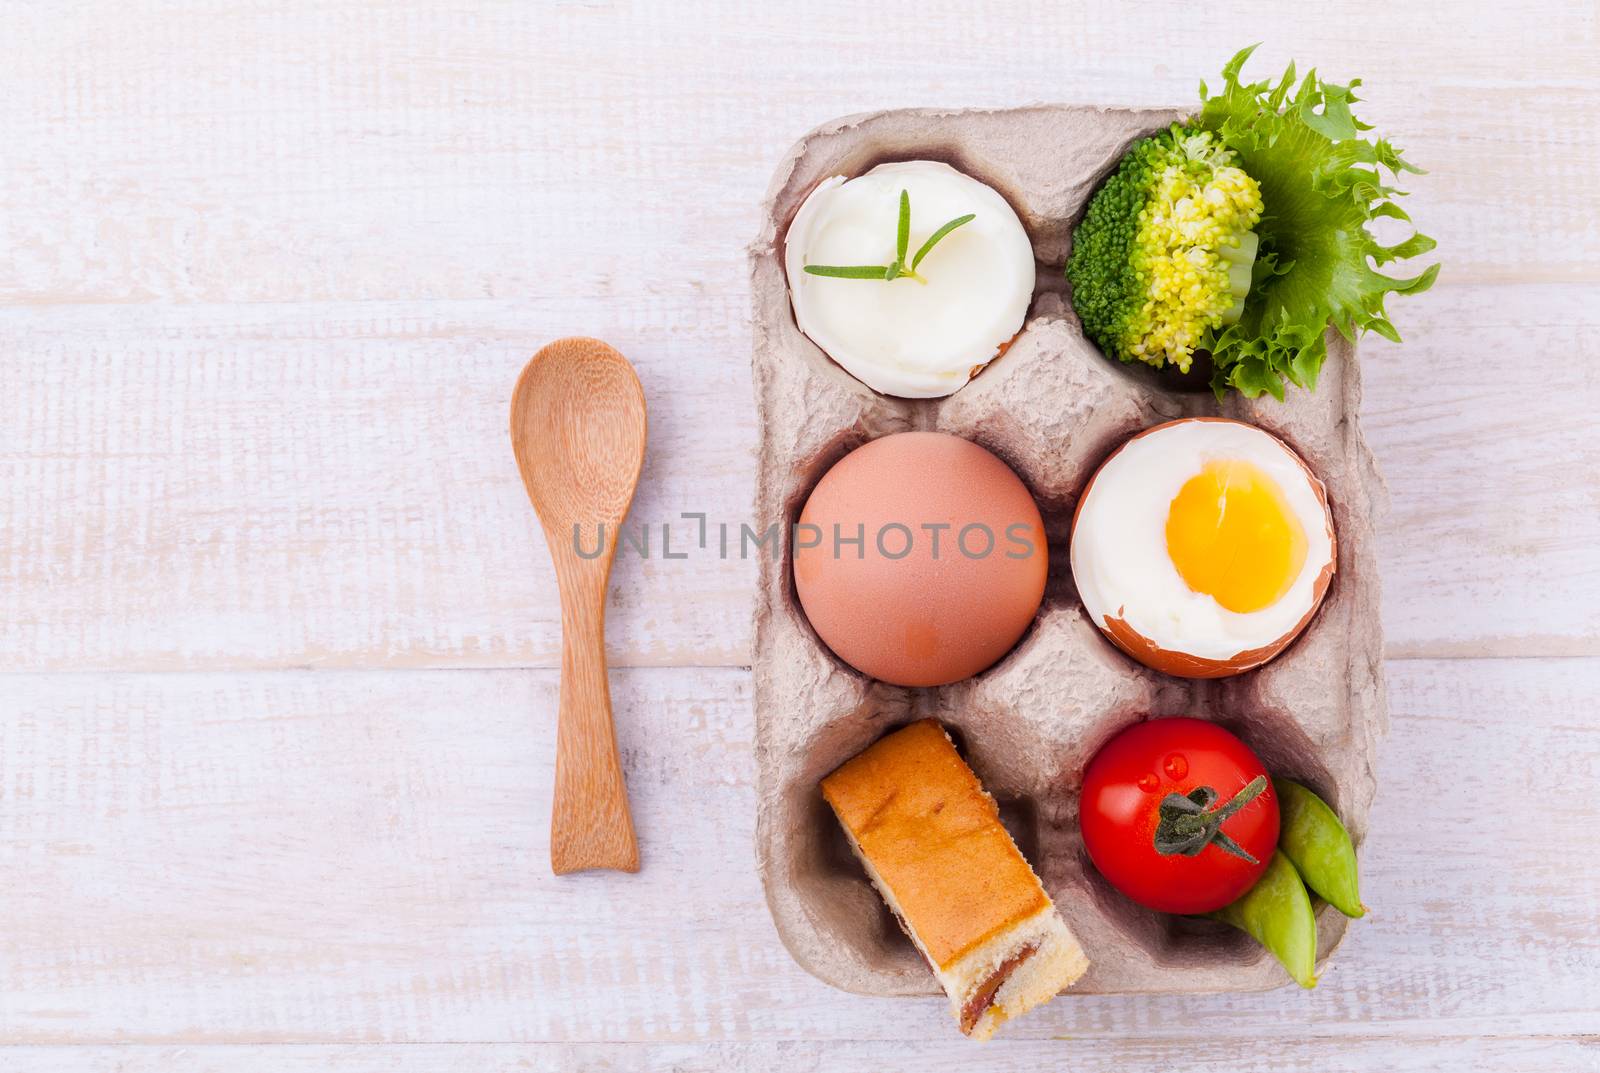 Boiled eggs for breakfast on wooden table. by kerdkanno